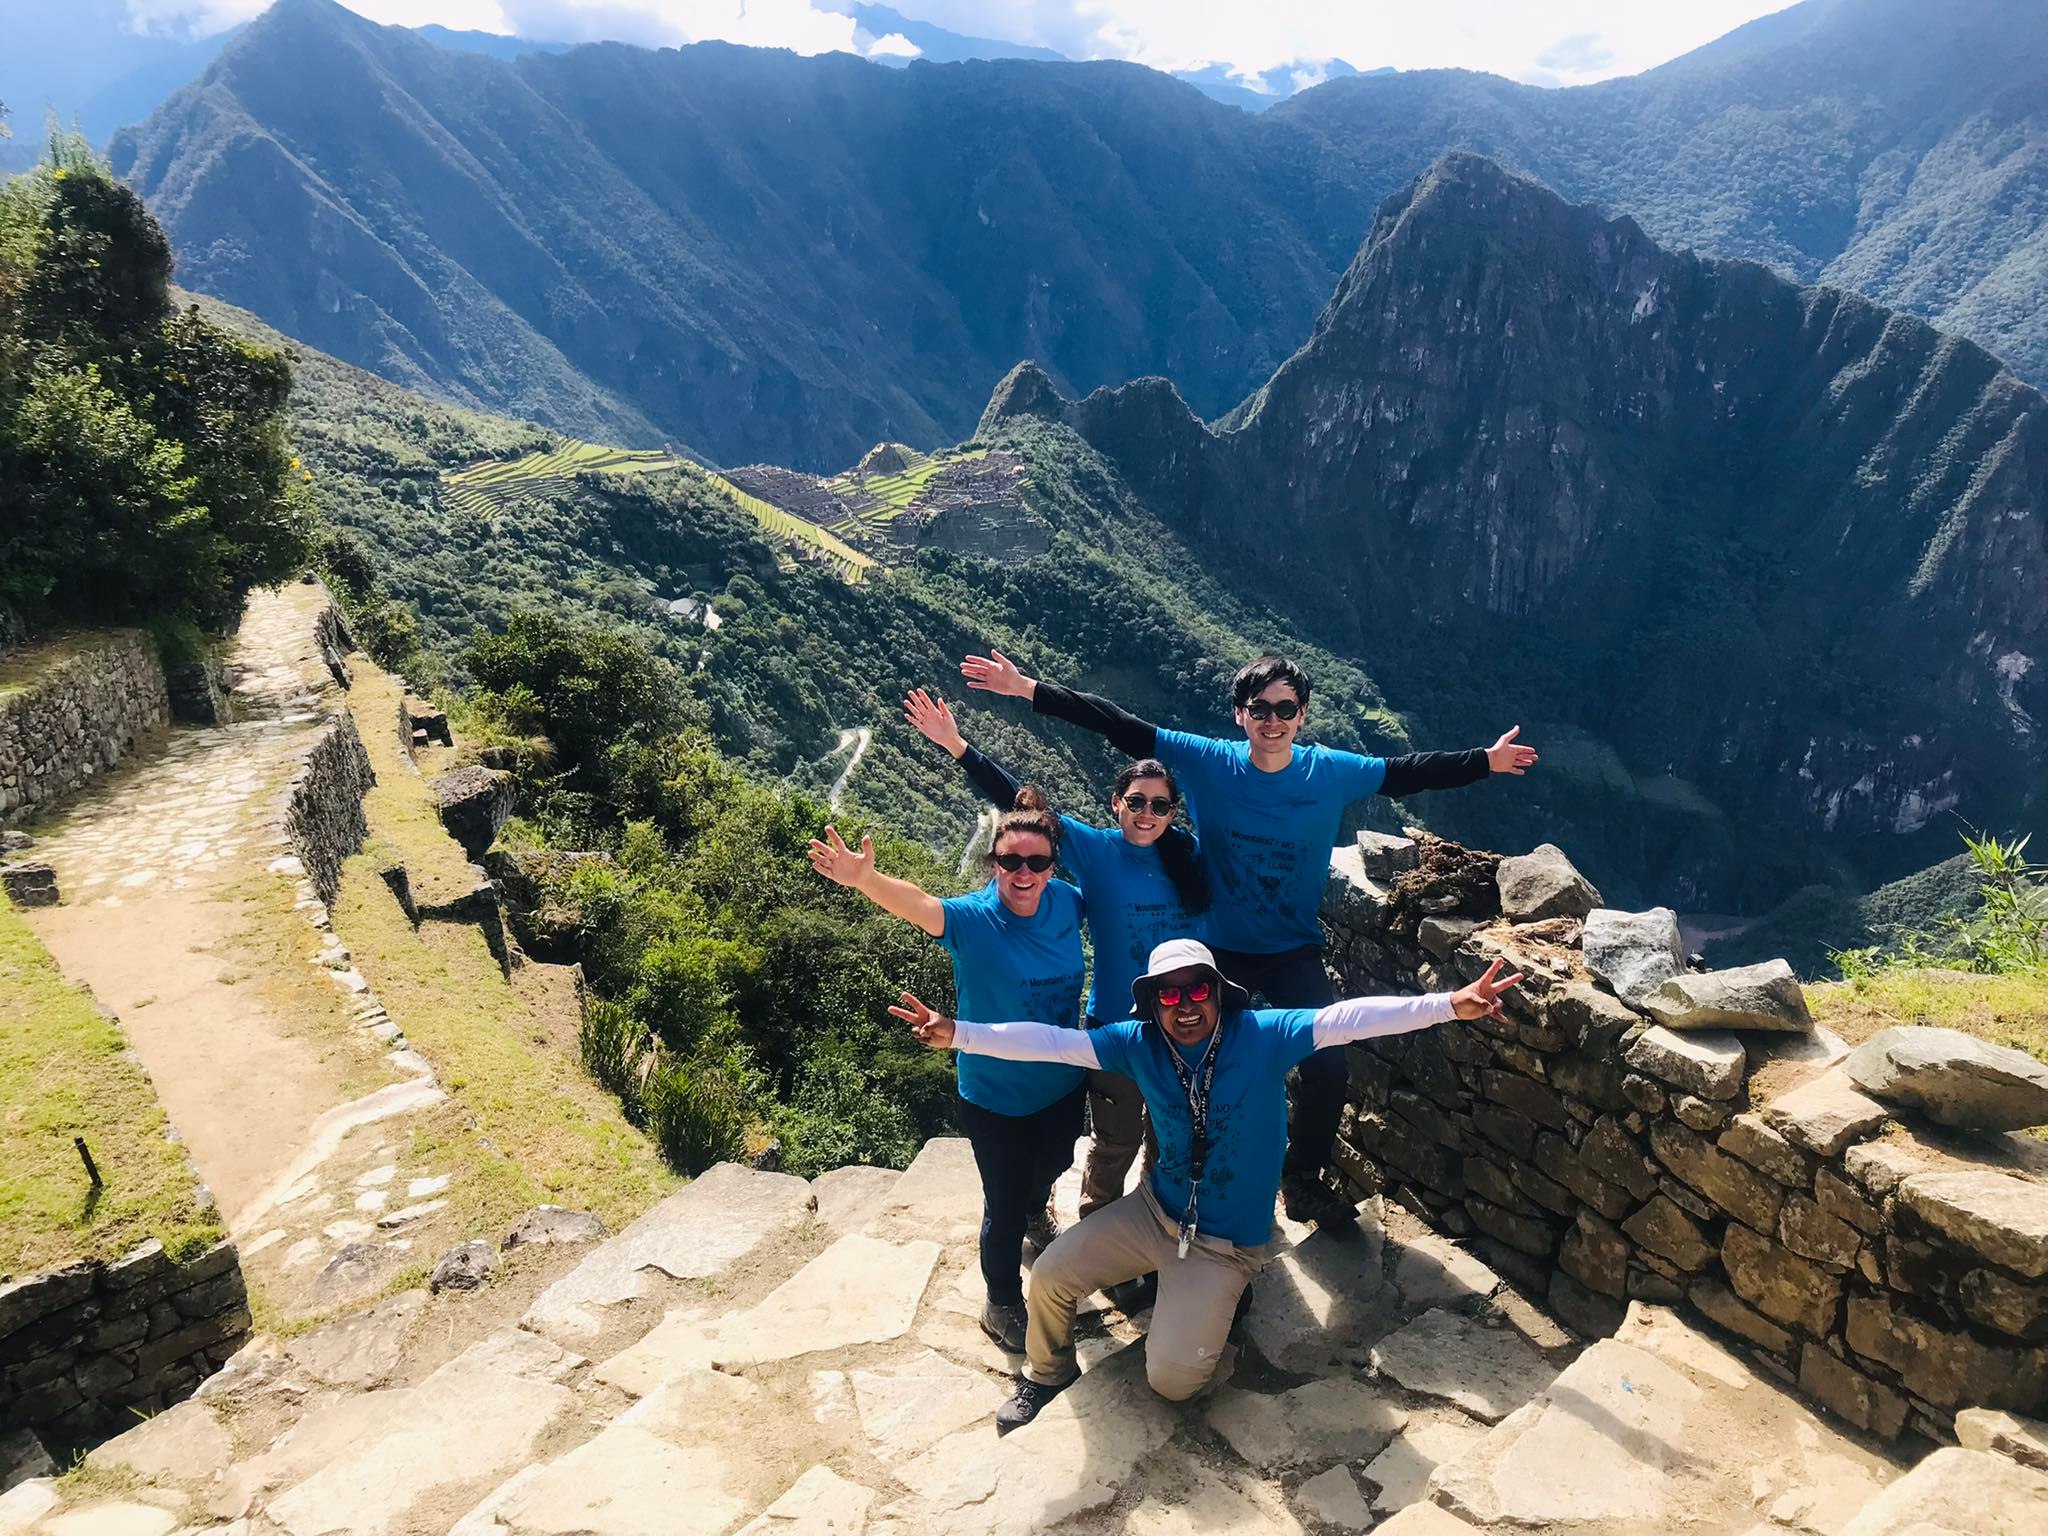 Recién llegado al Sungate el día 2 - Camino Inca corto a Machu Picchu